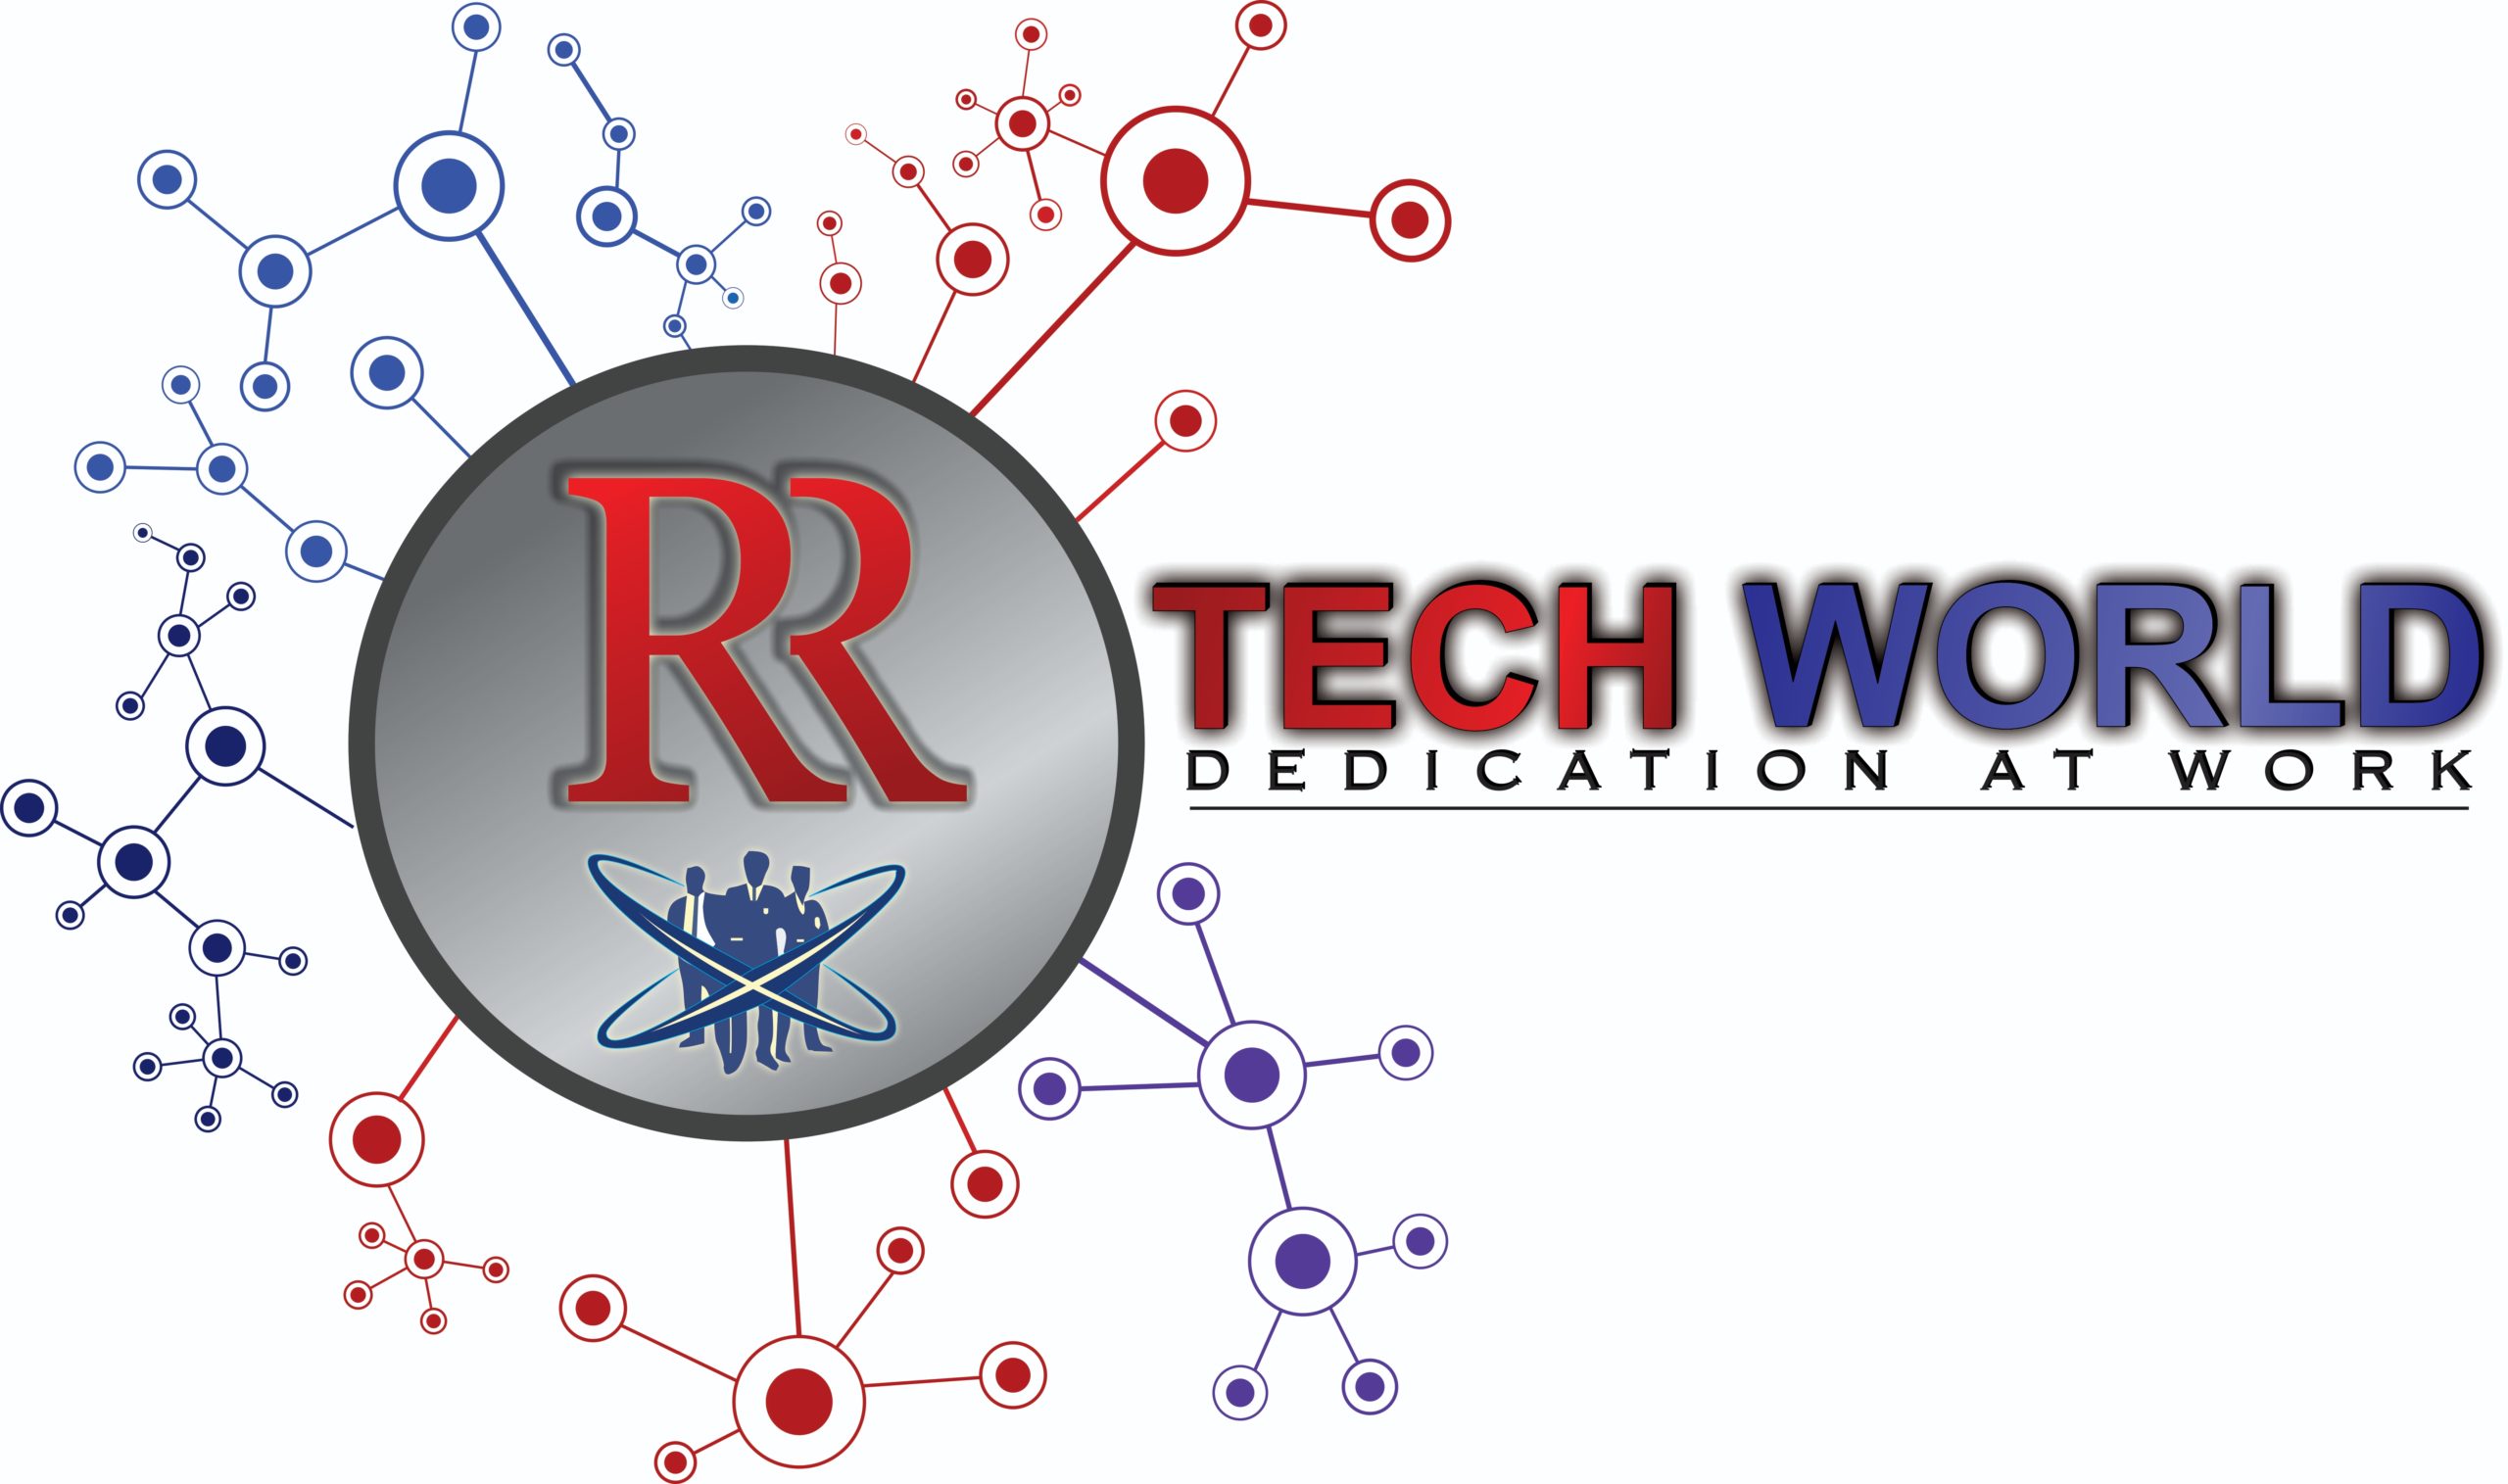 RR Tech World